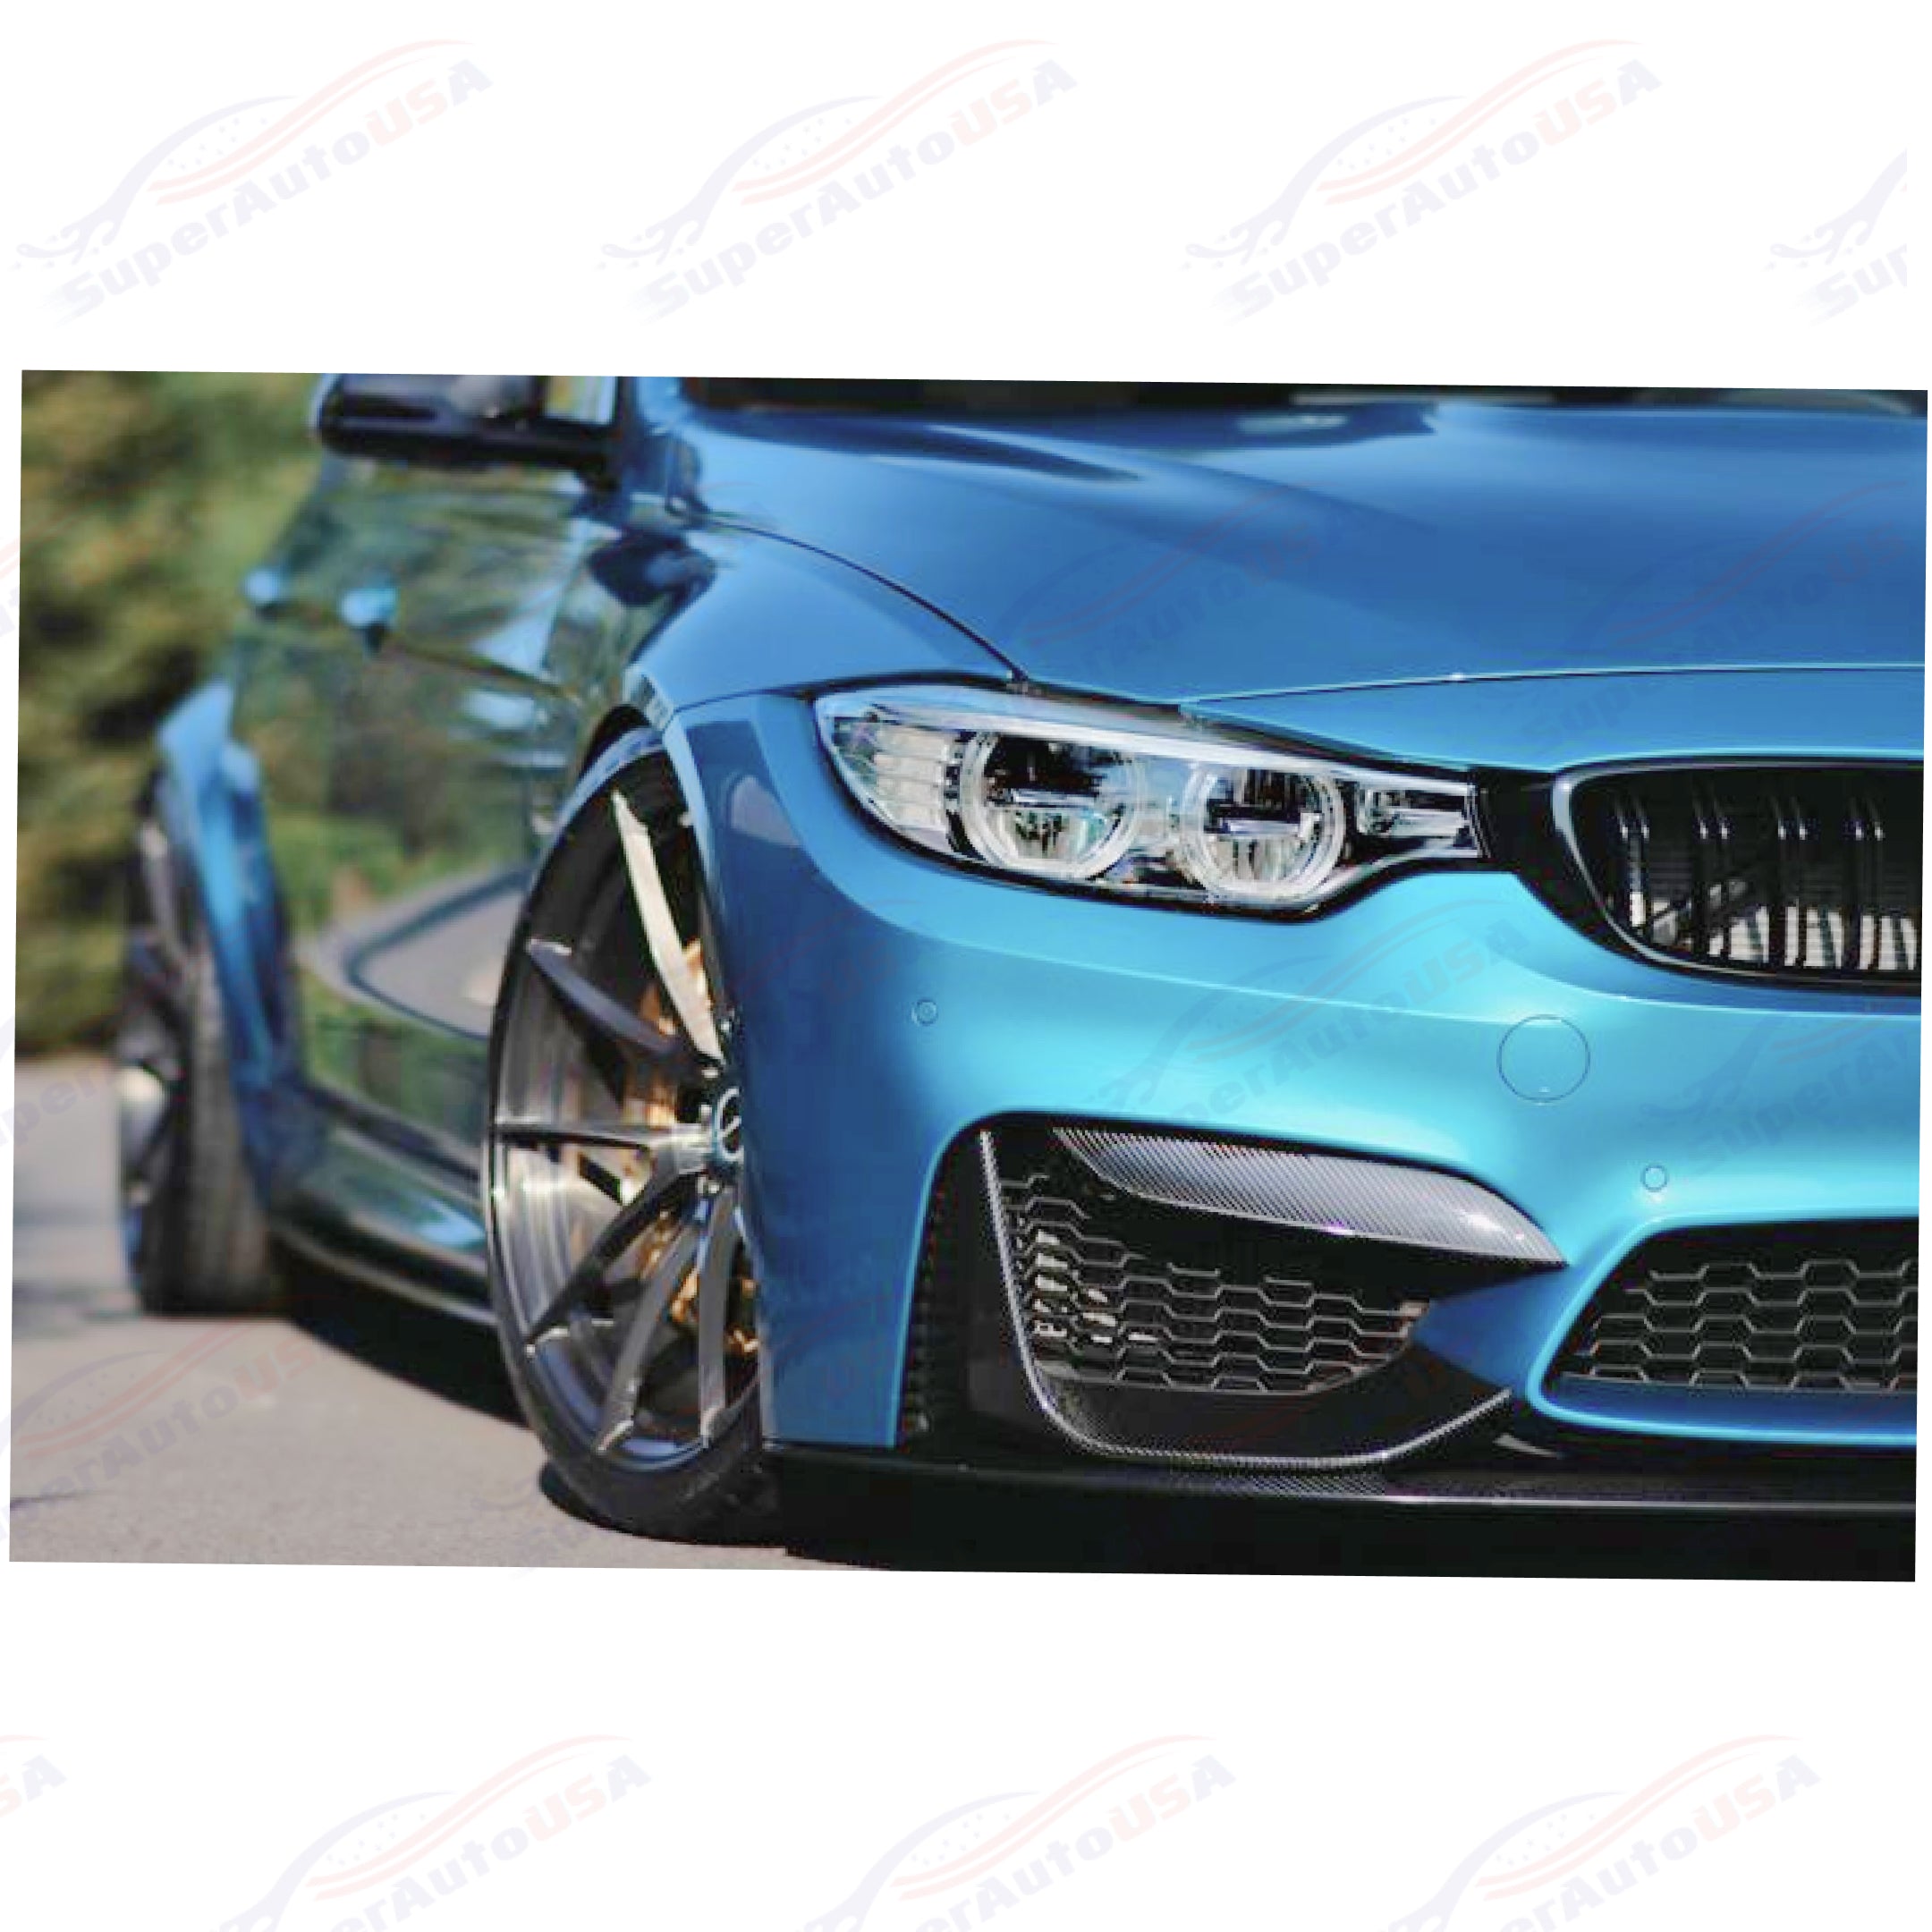 Fits 2015-20 BMW F80 M3 F82 F83 M4 CS Style Front Lip Spoilers & Splitter Kit (Gloss Black)